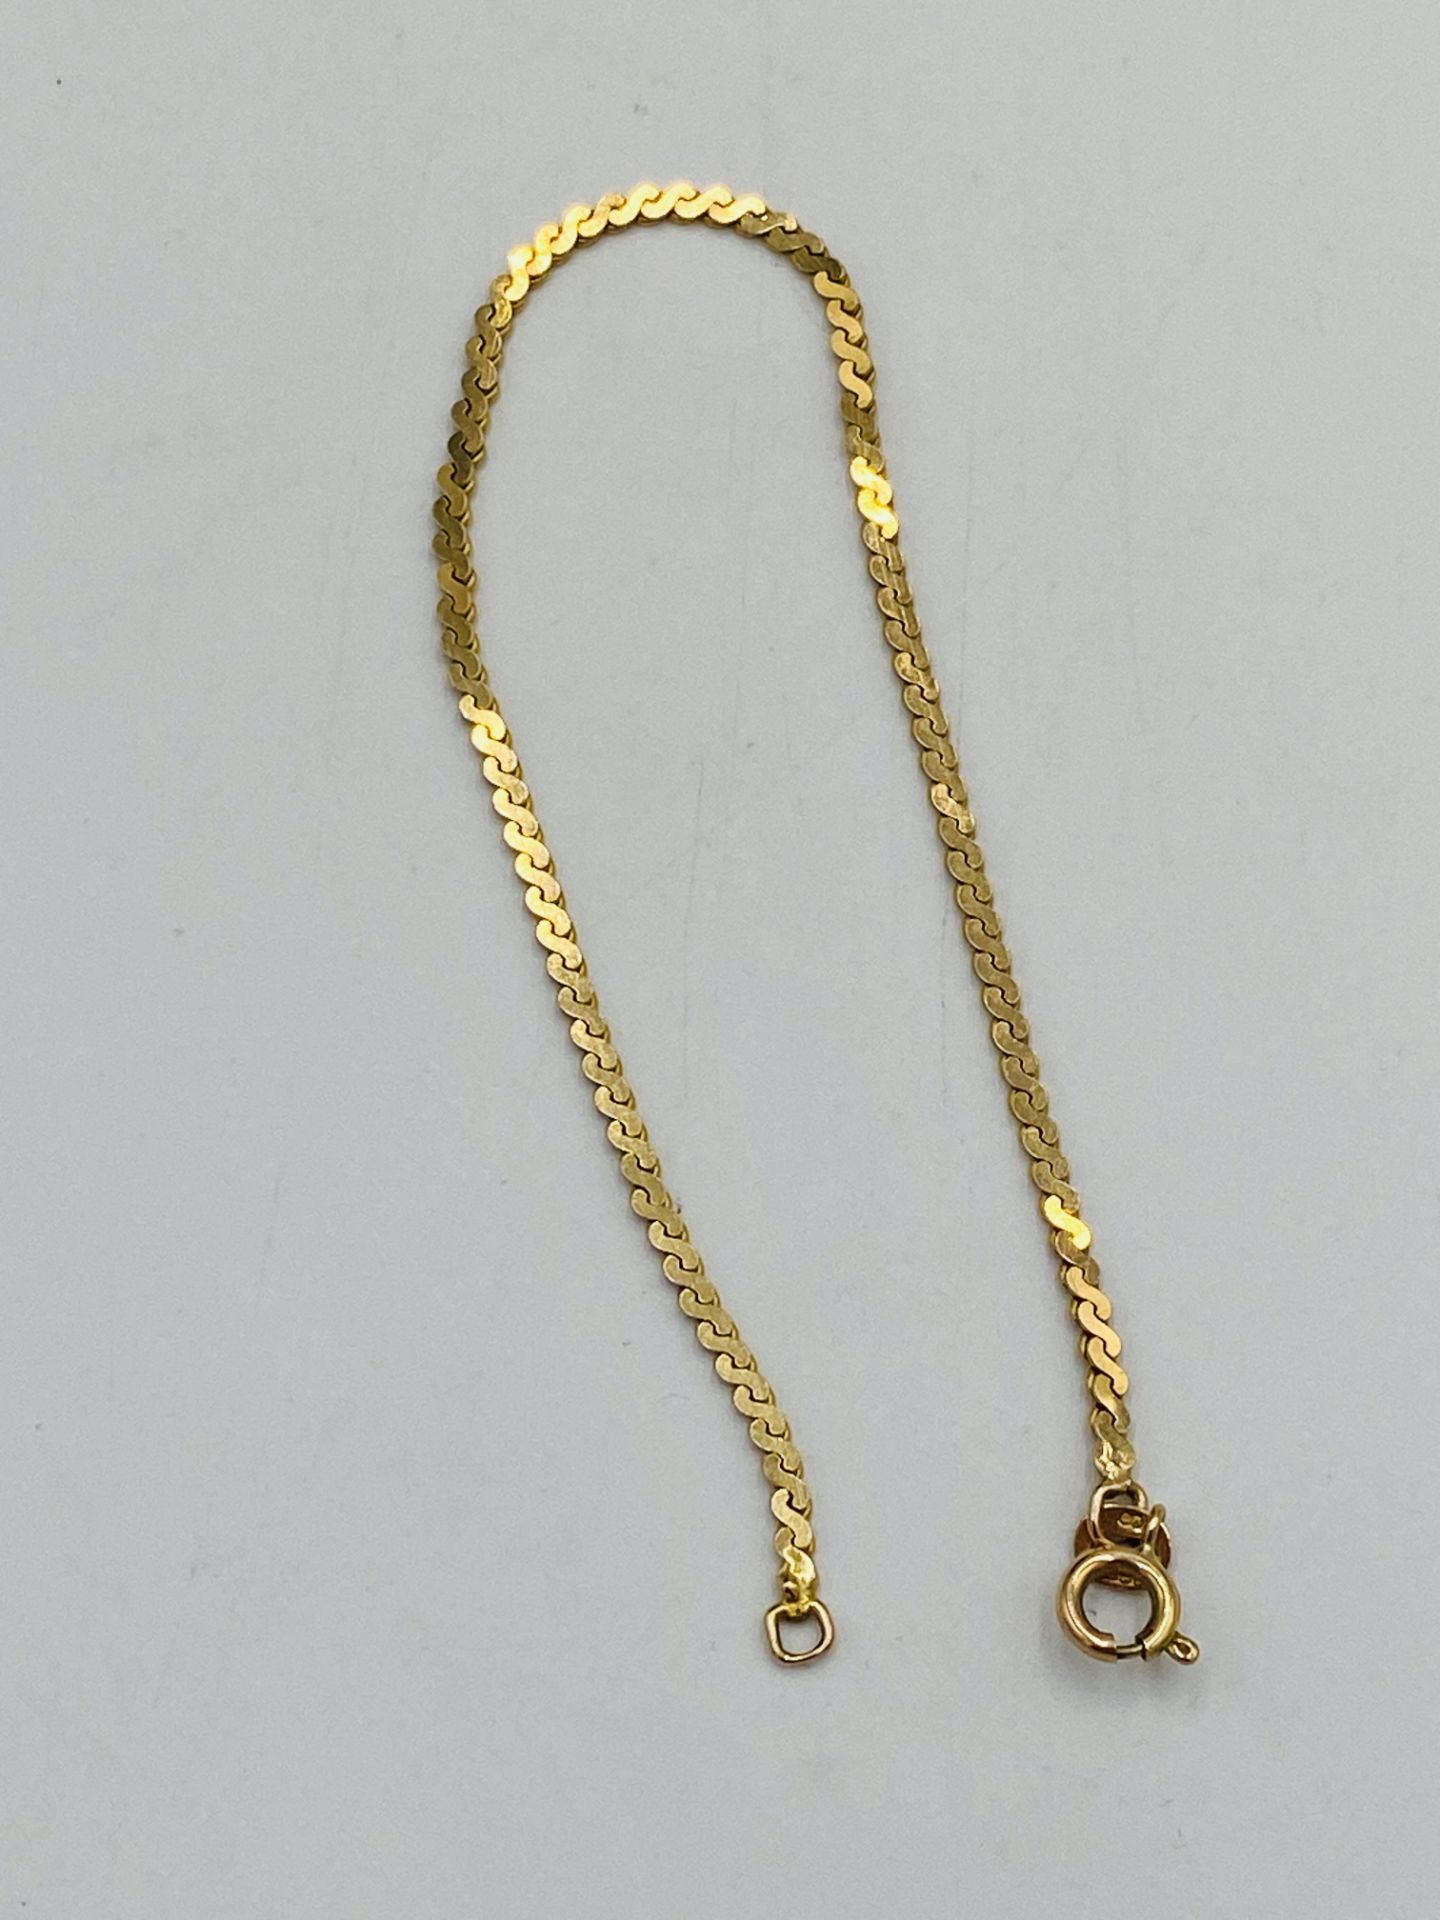 9ct gold bracelet - Image 2 of 3